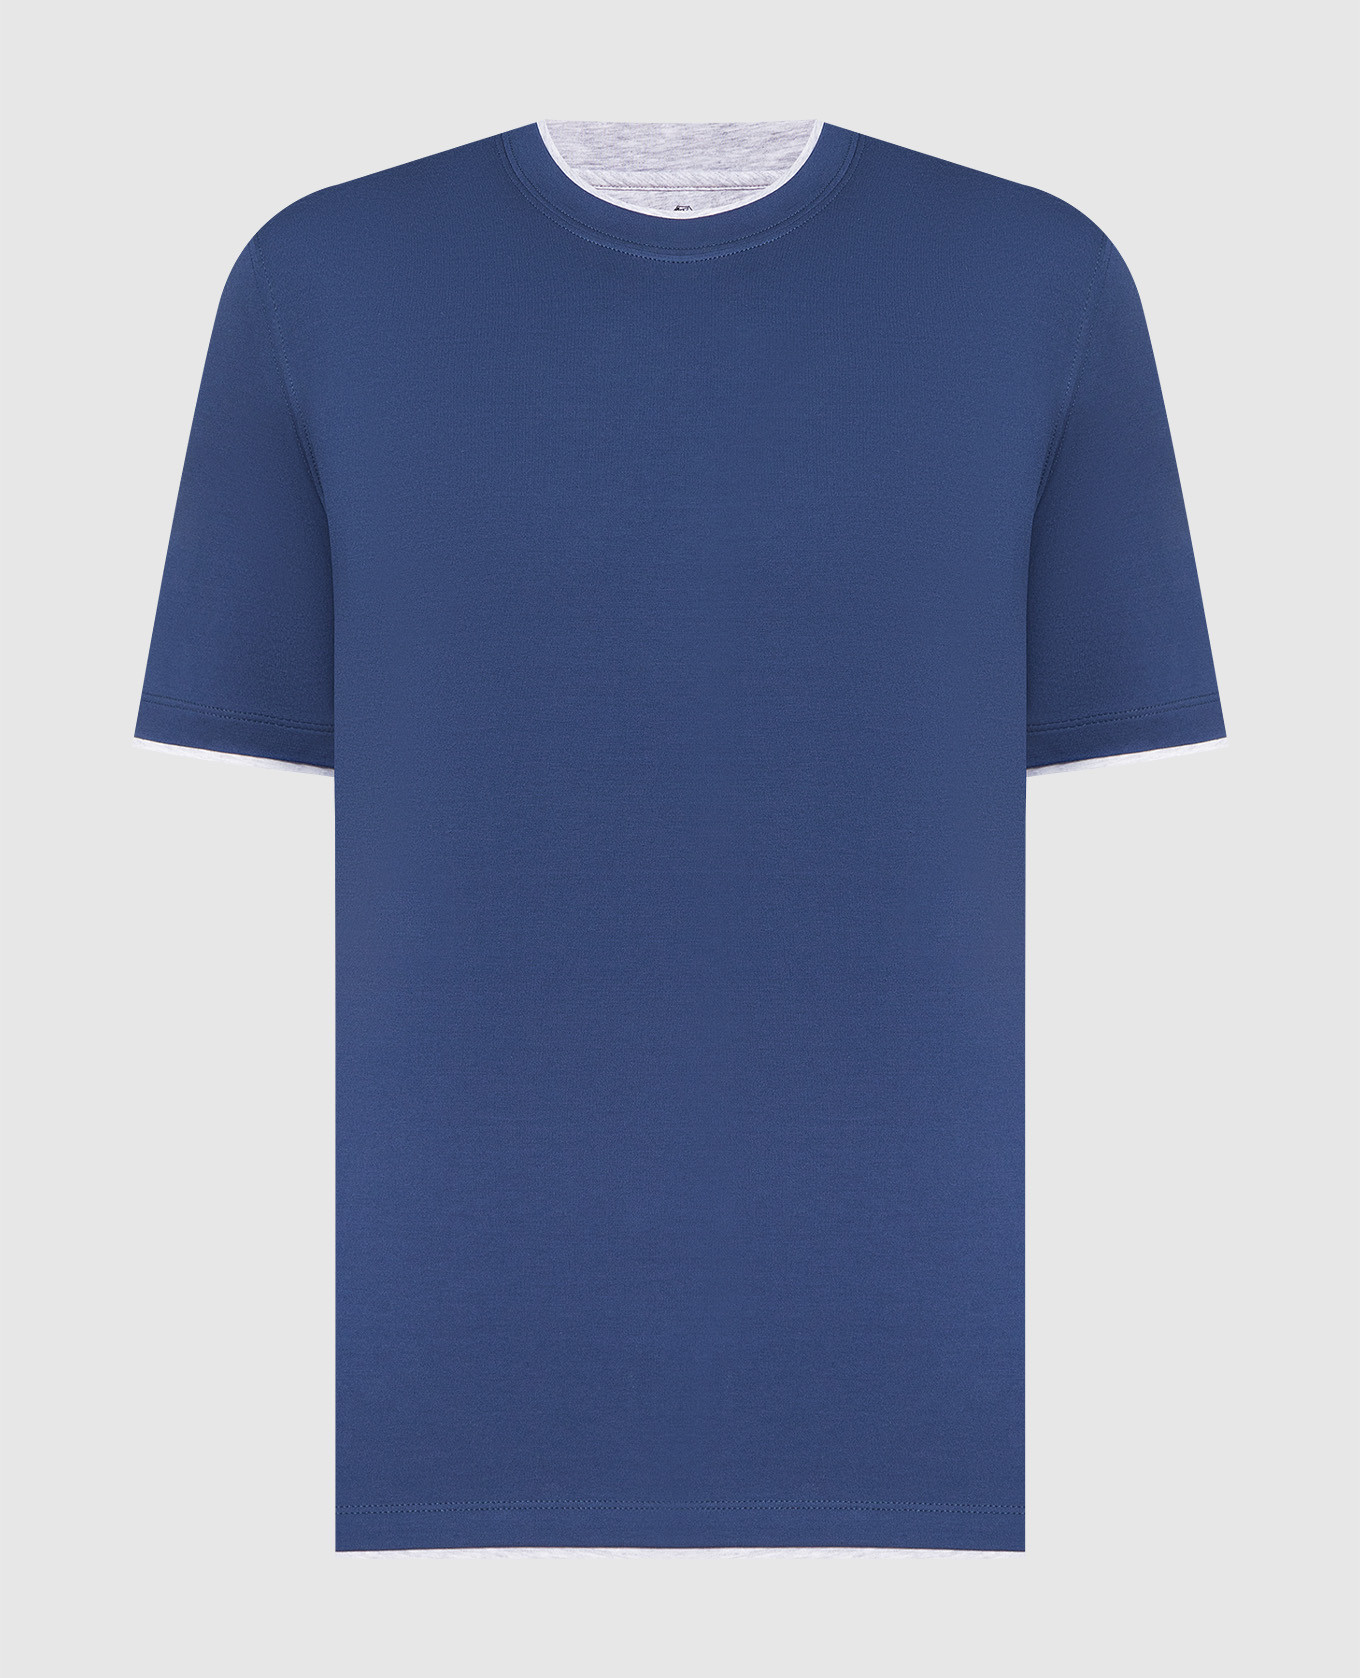 Синяя футболка с эффектом наложения слоев